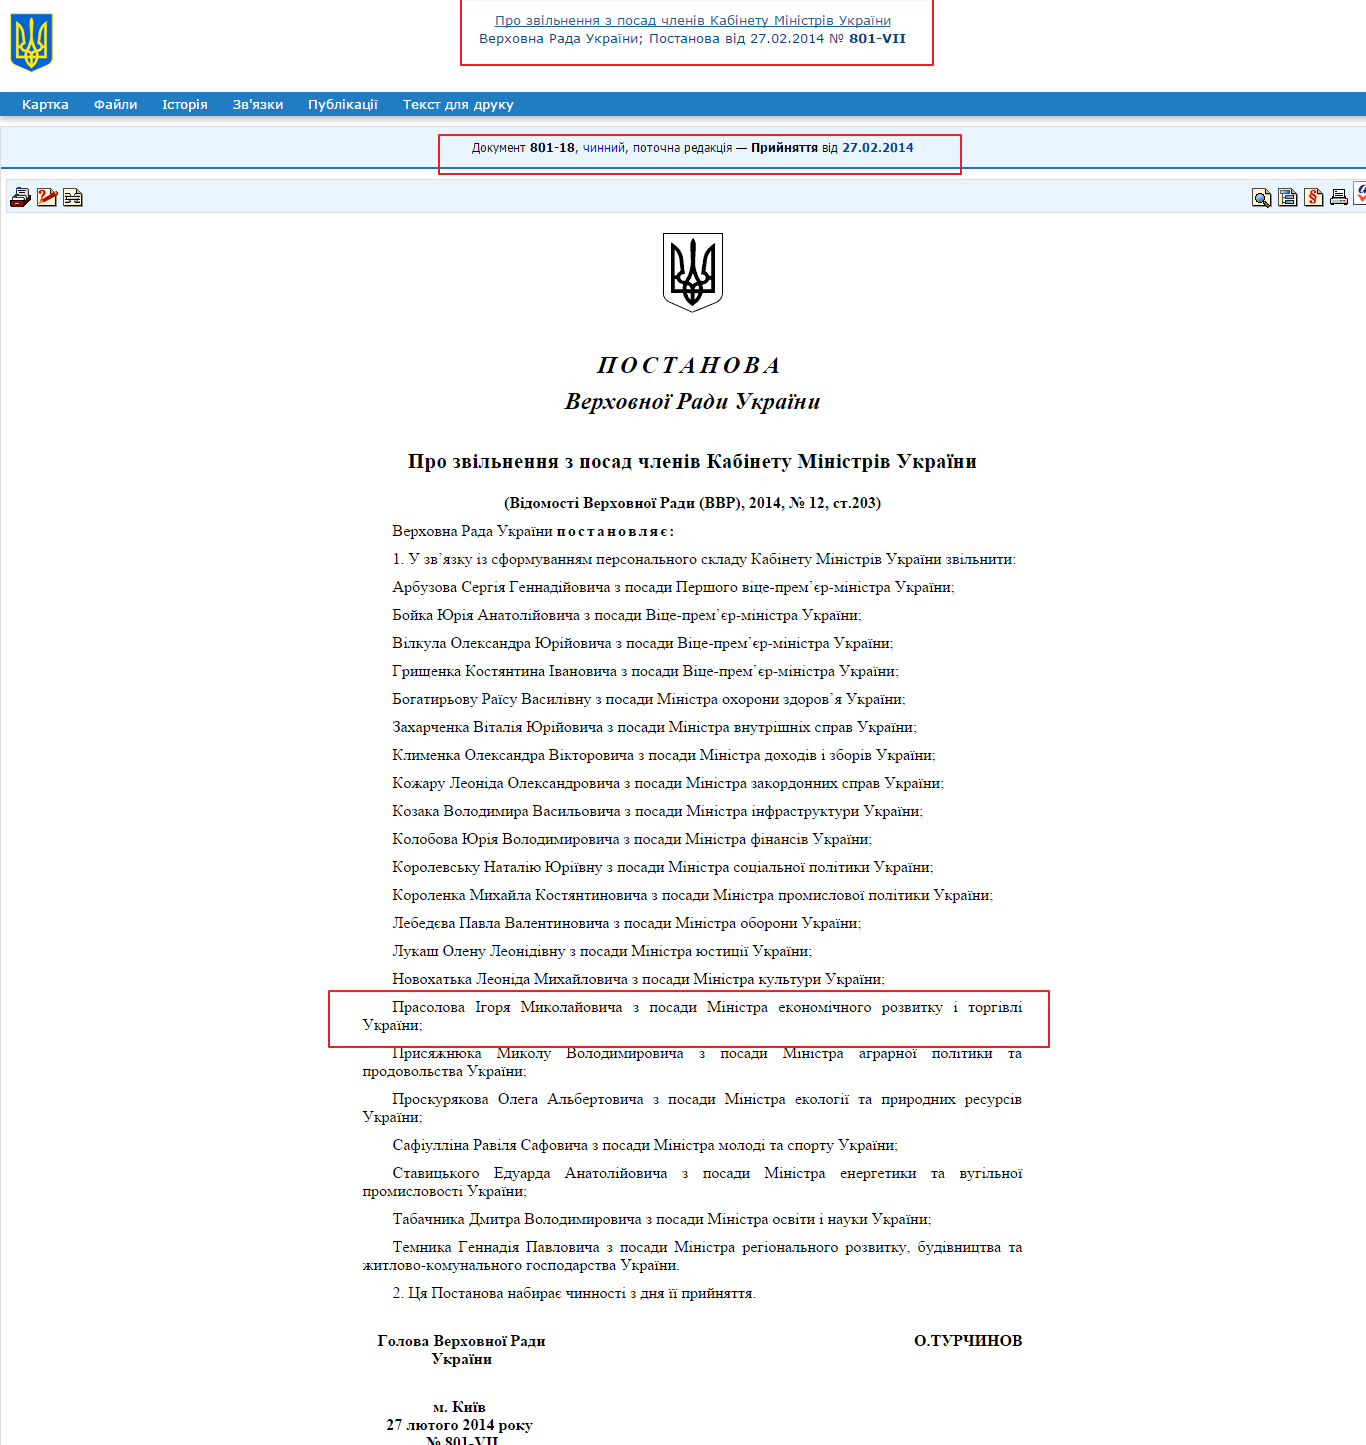 http://zakon2.rada.gov.ua/laws/show/801-18